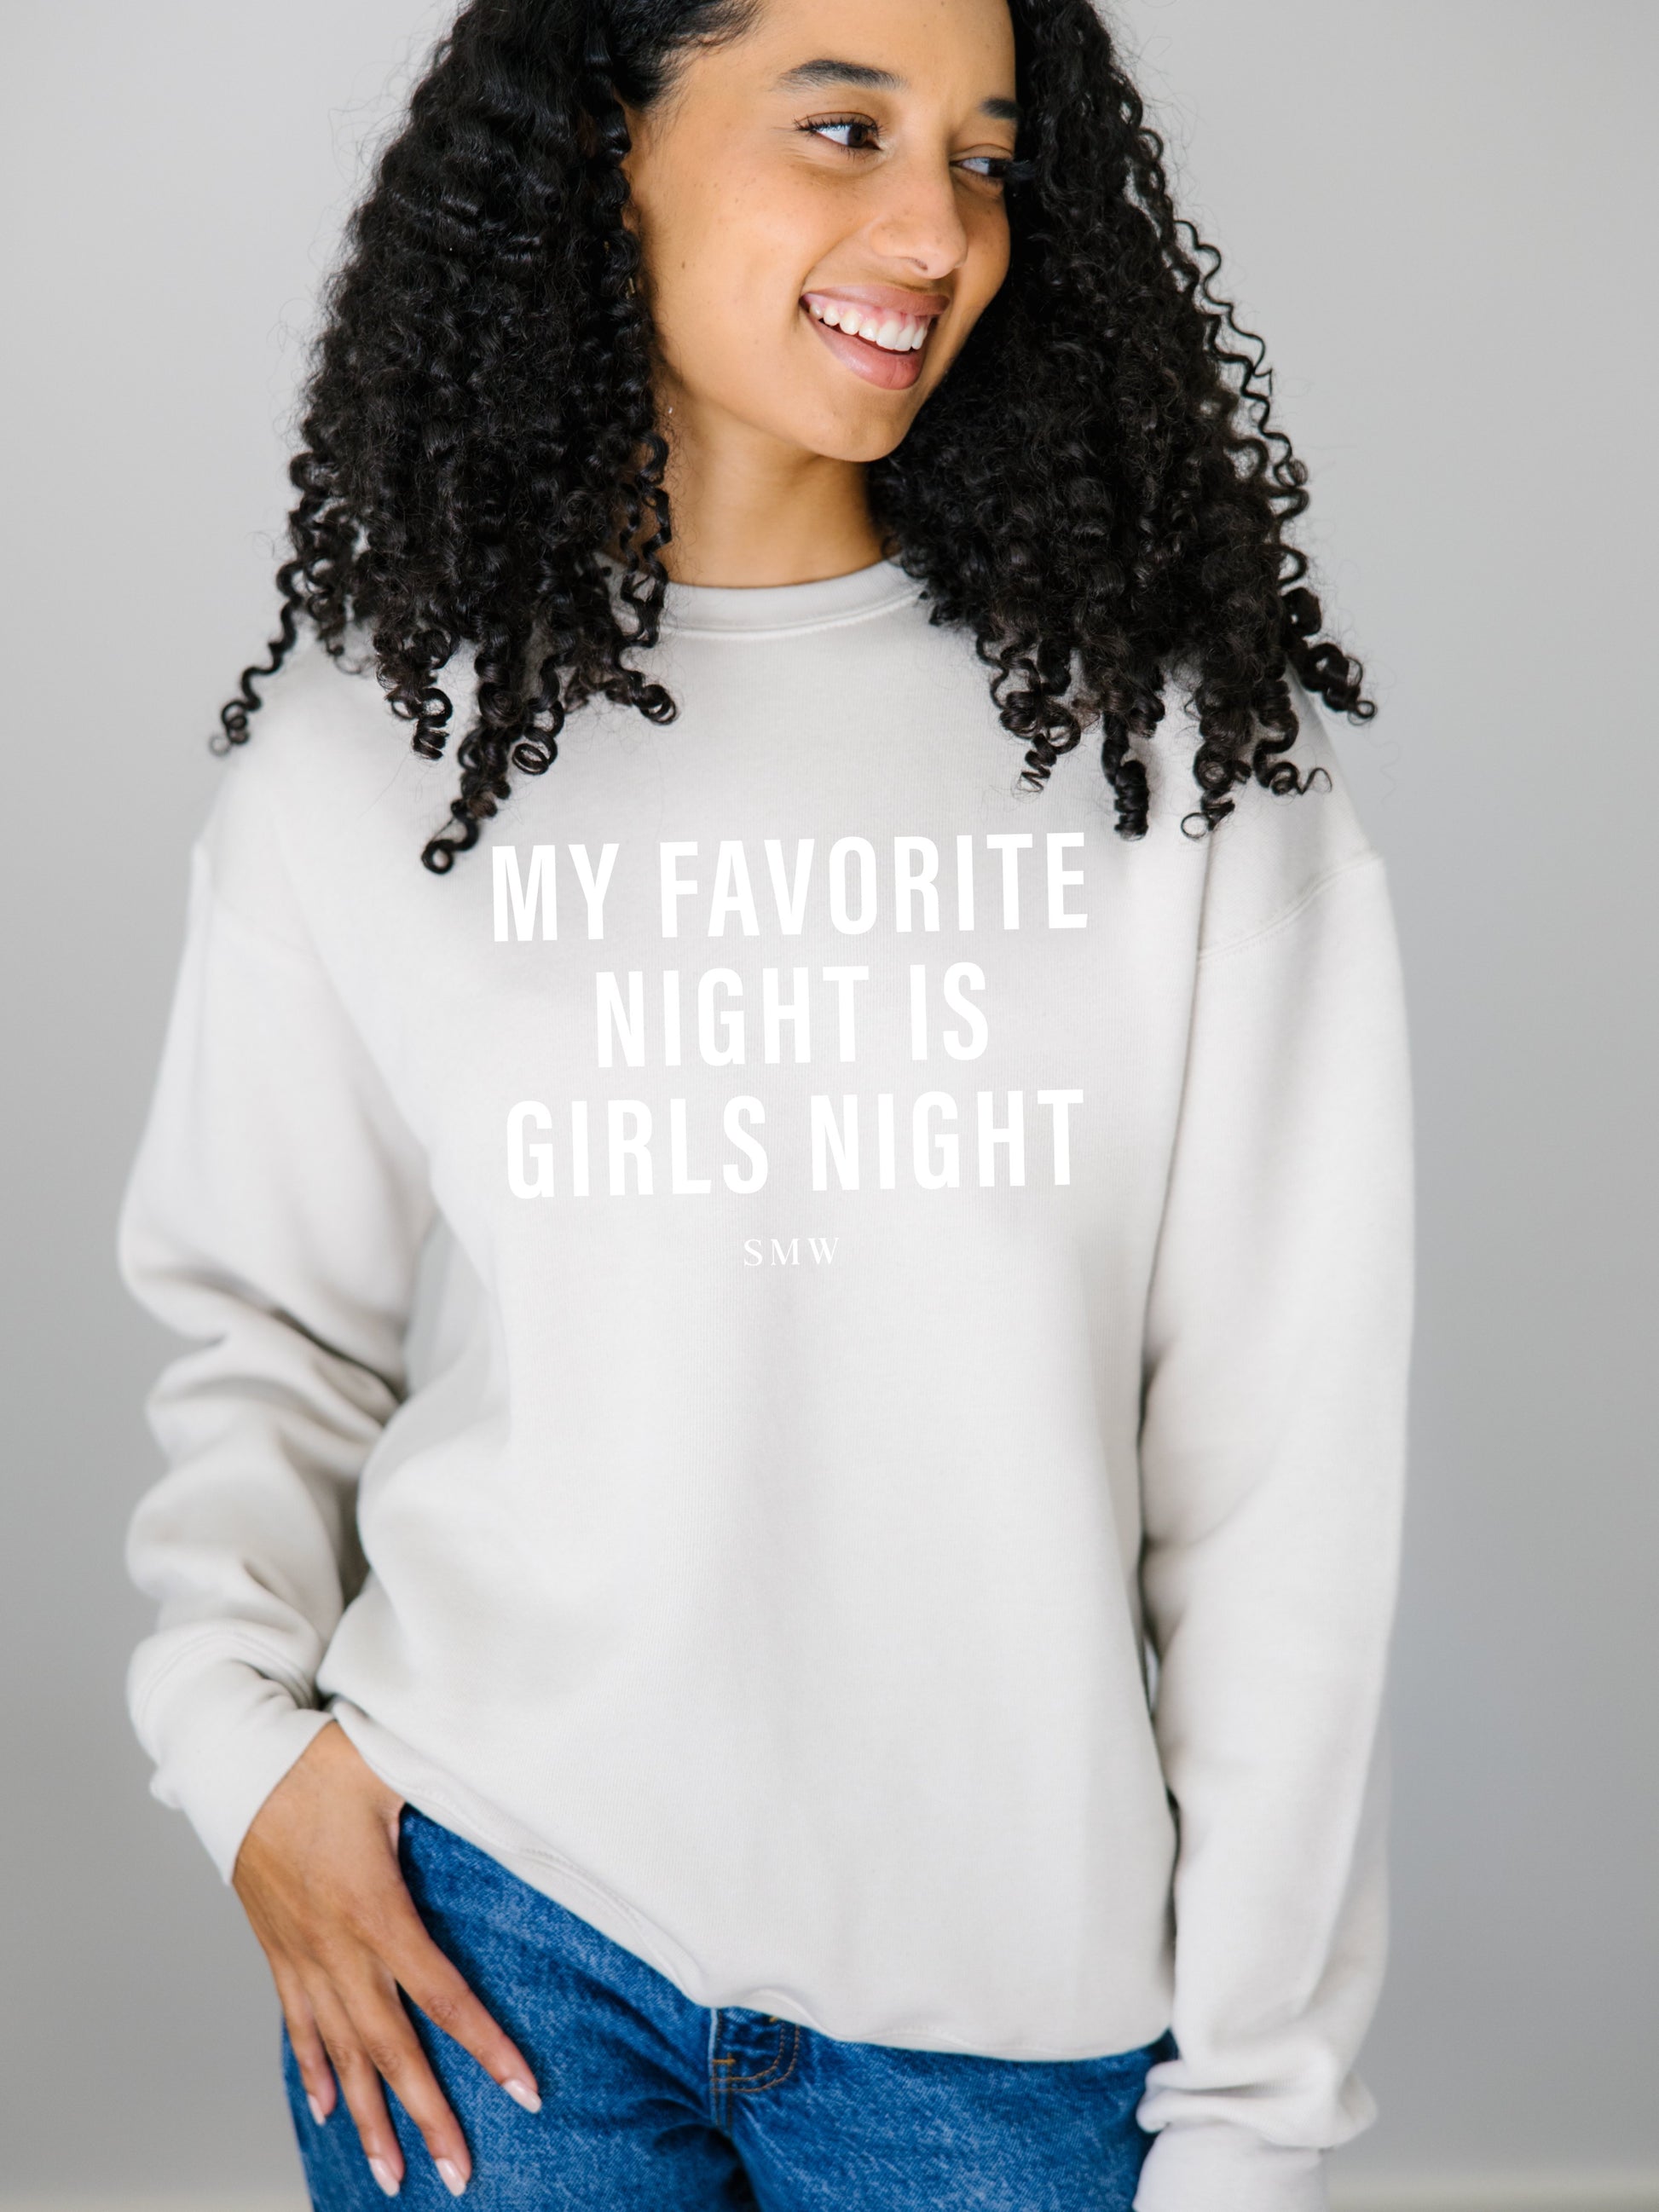 Signature Girls Night Sweatshirt for women